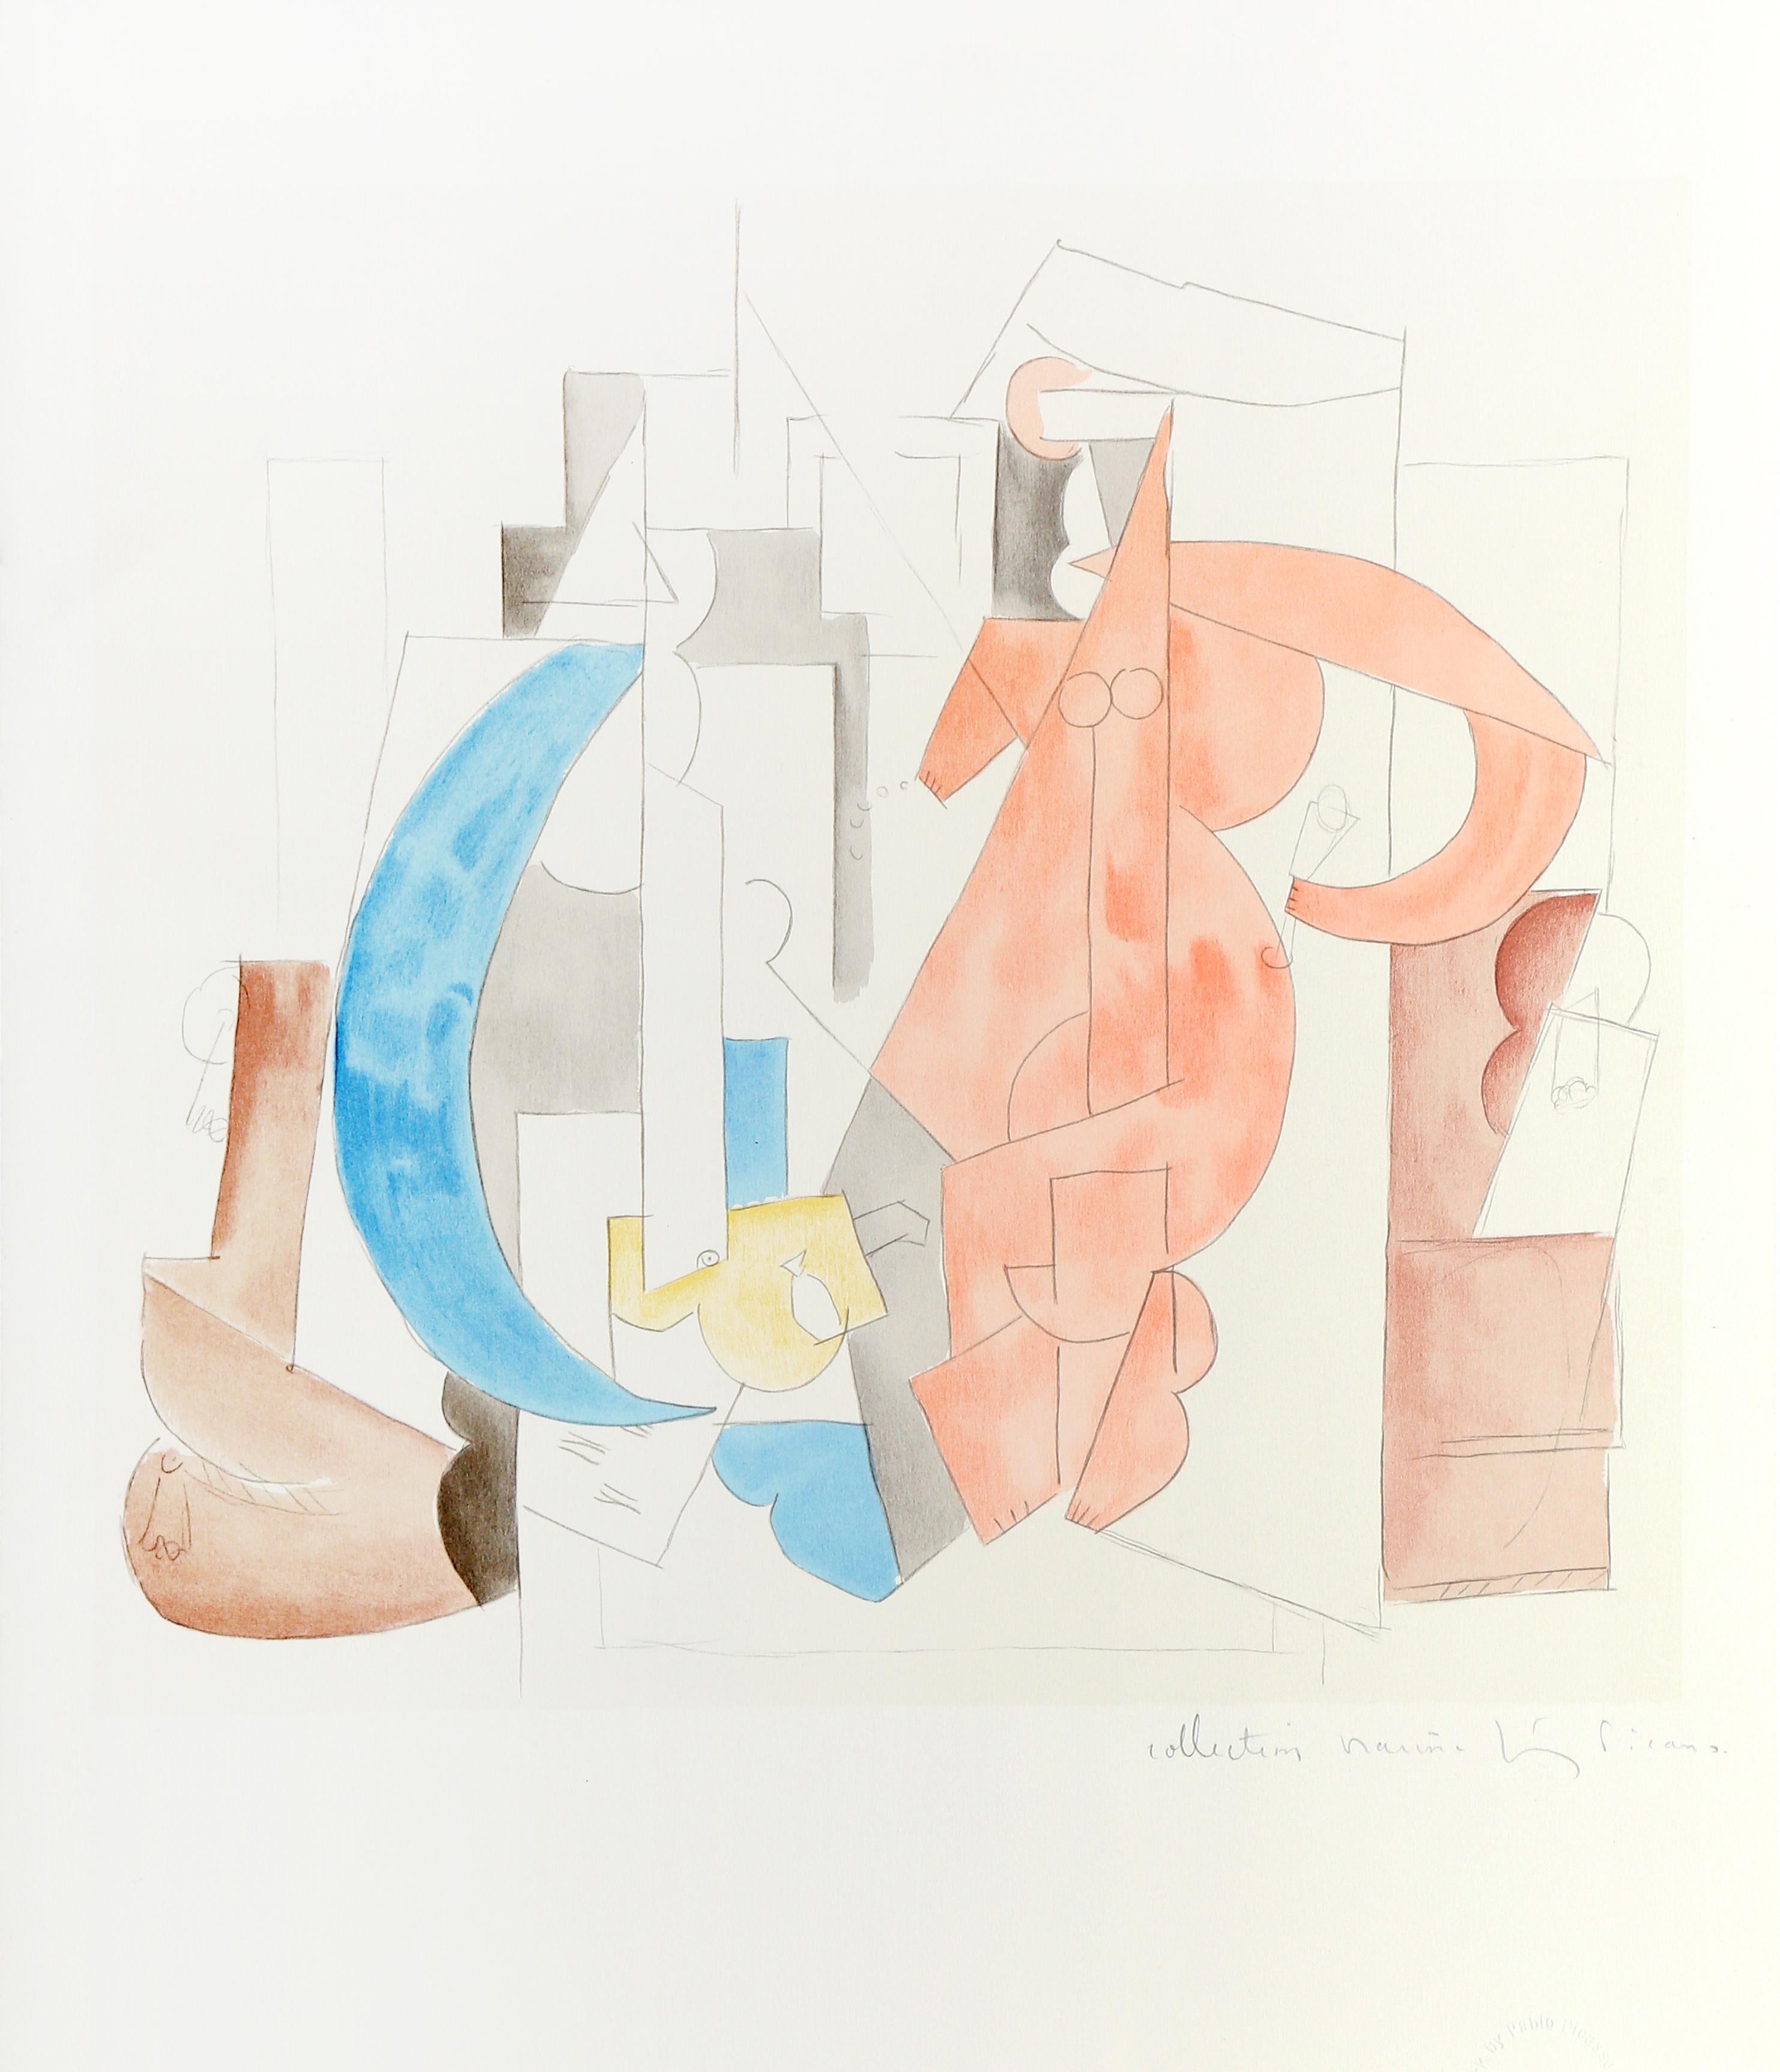 Composition, Cubist Lithograph by Pablo Picasso